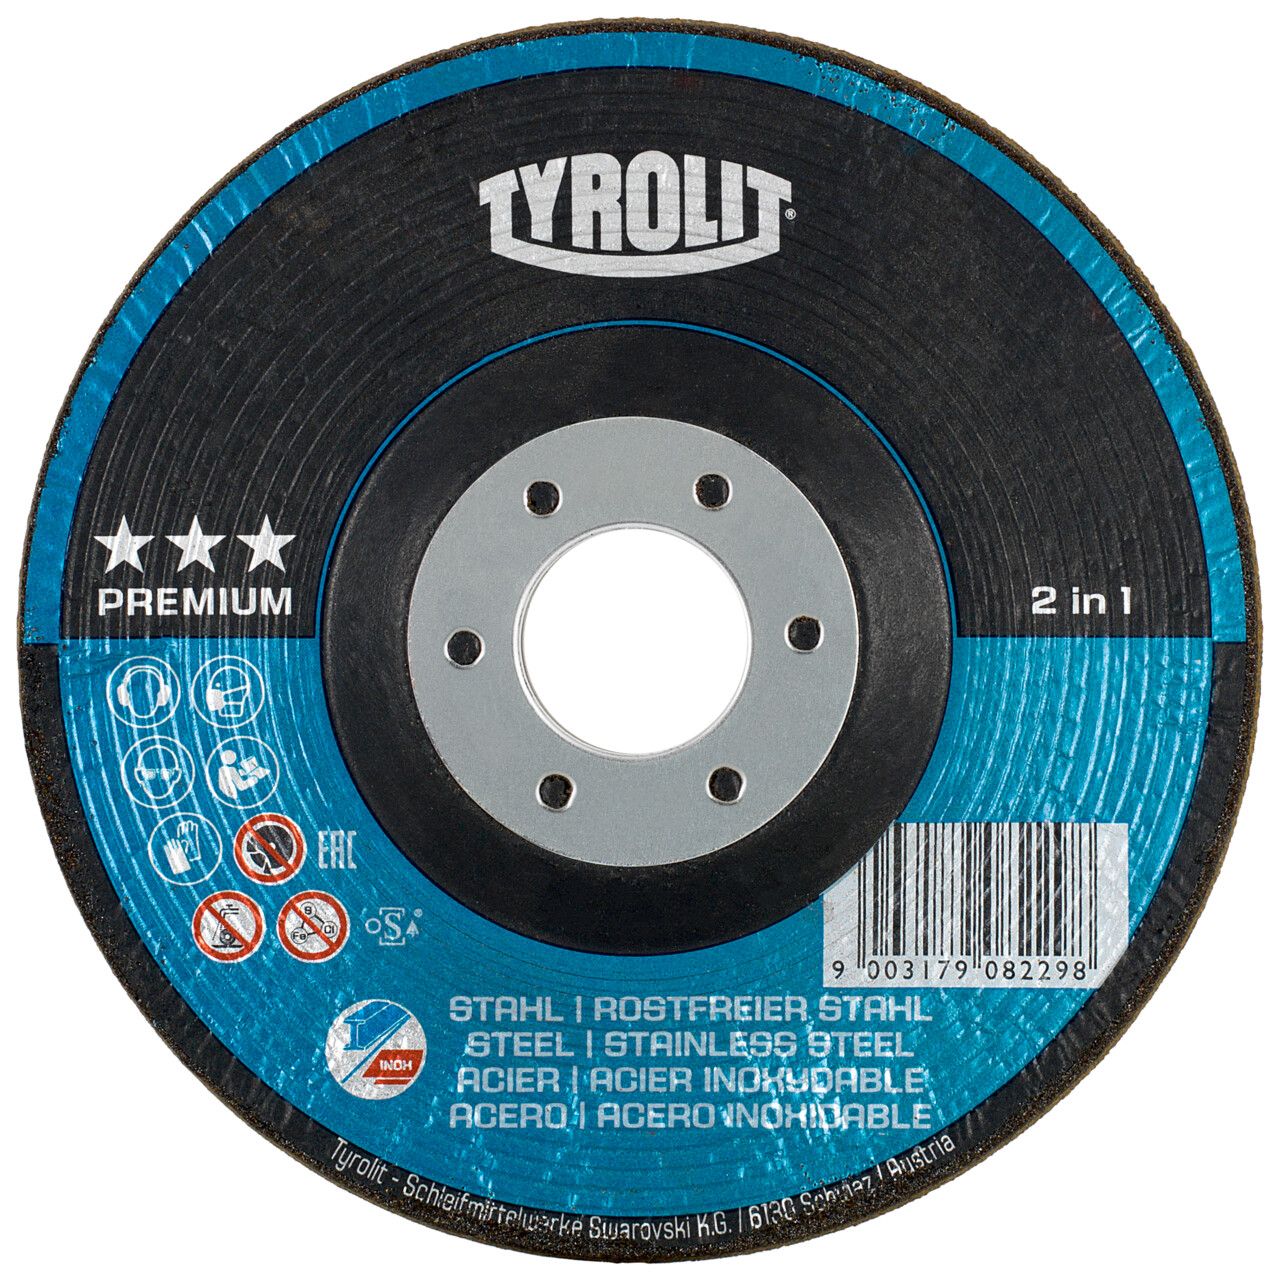 Tyrolit 2in1 RONDELLER® para acero y acero inoxidable 178 #29RON 178x22,23 A24Q-BF